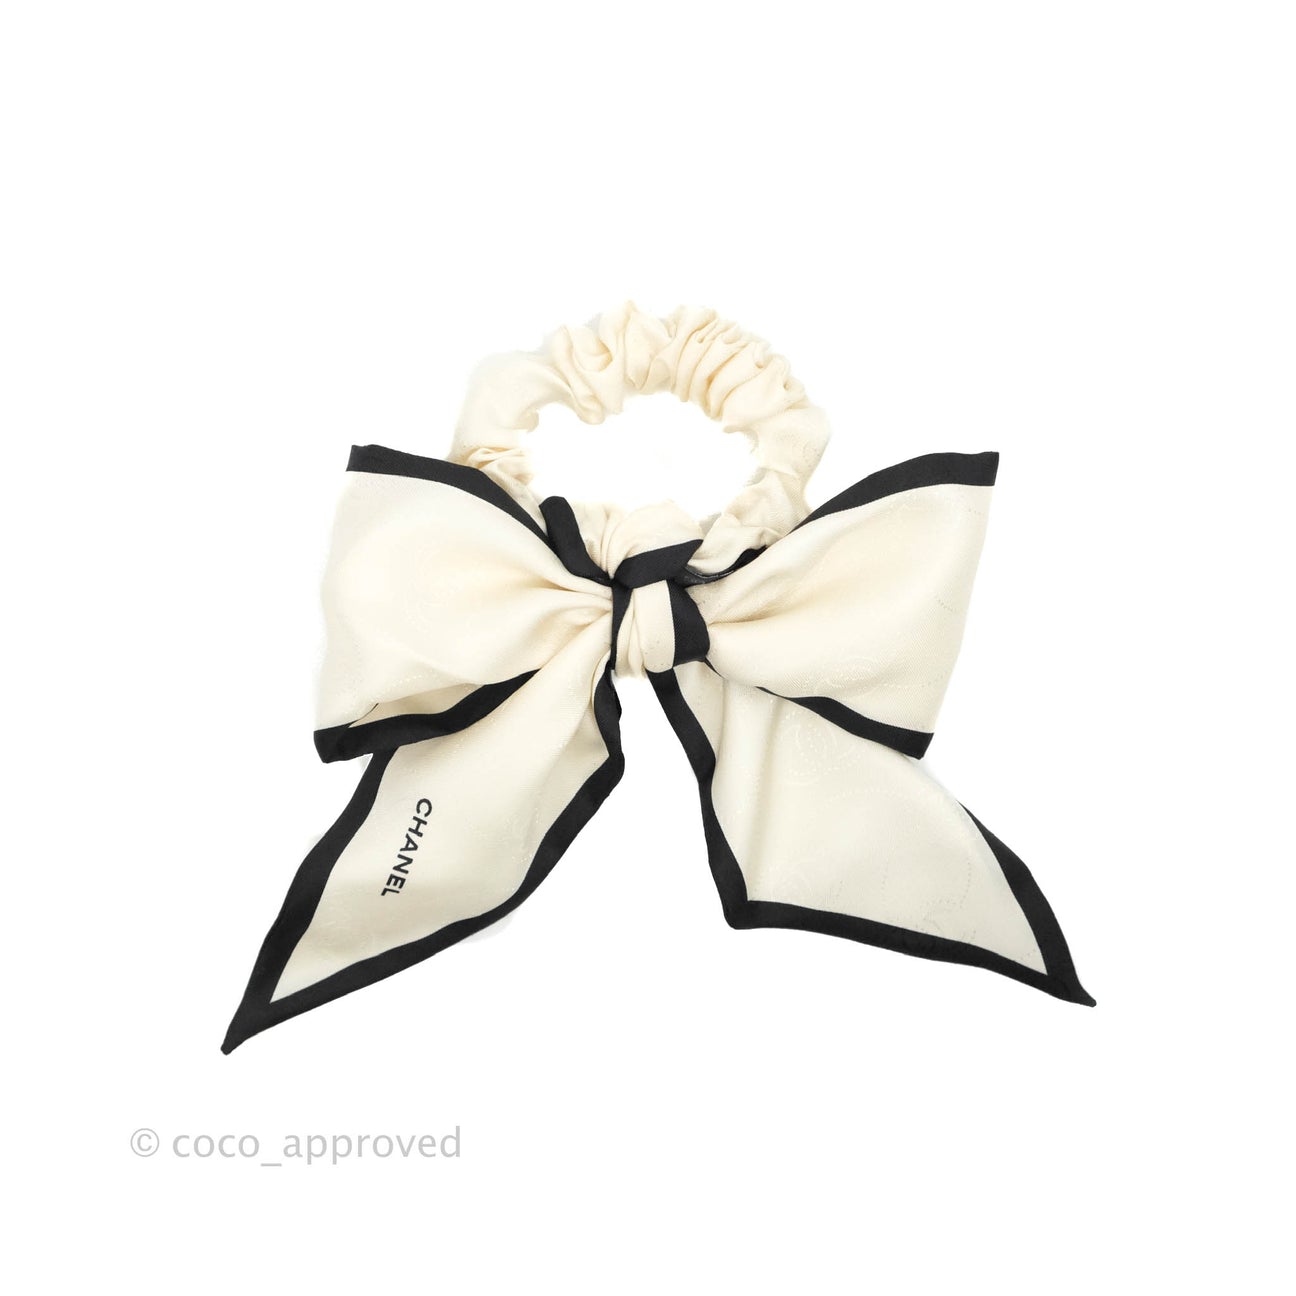 Chanel Style Silk Bow Hair Tie – El blin-blín